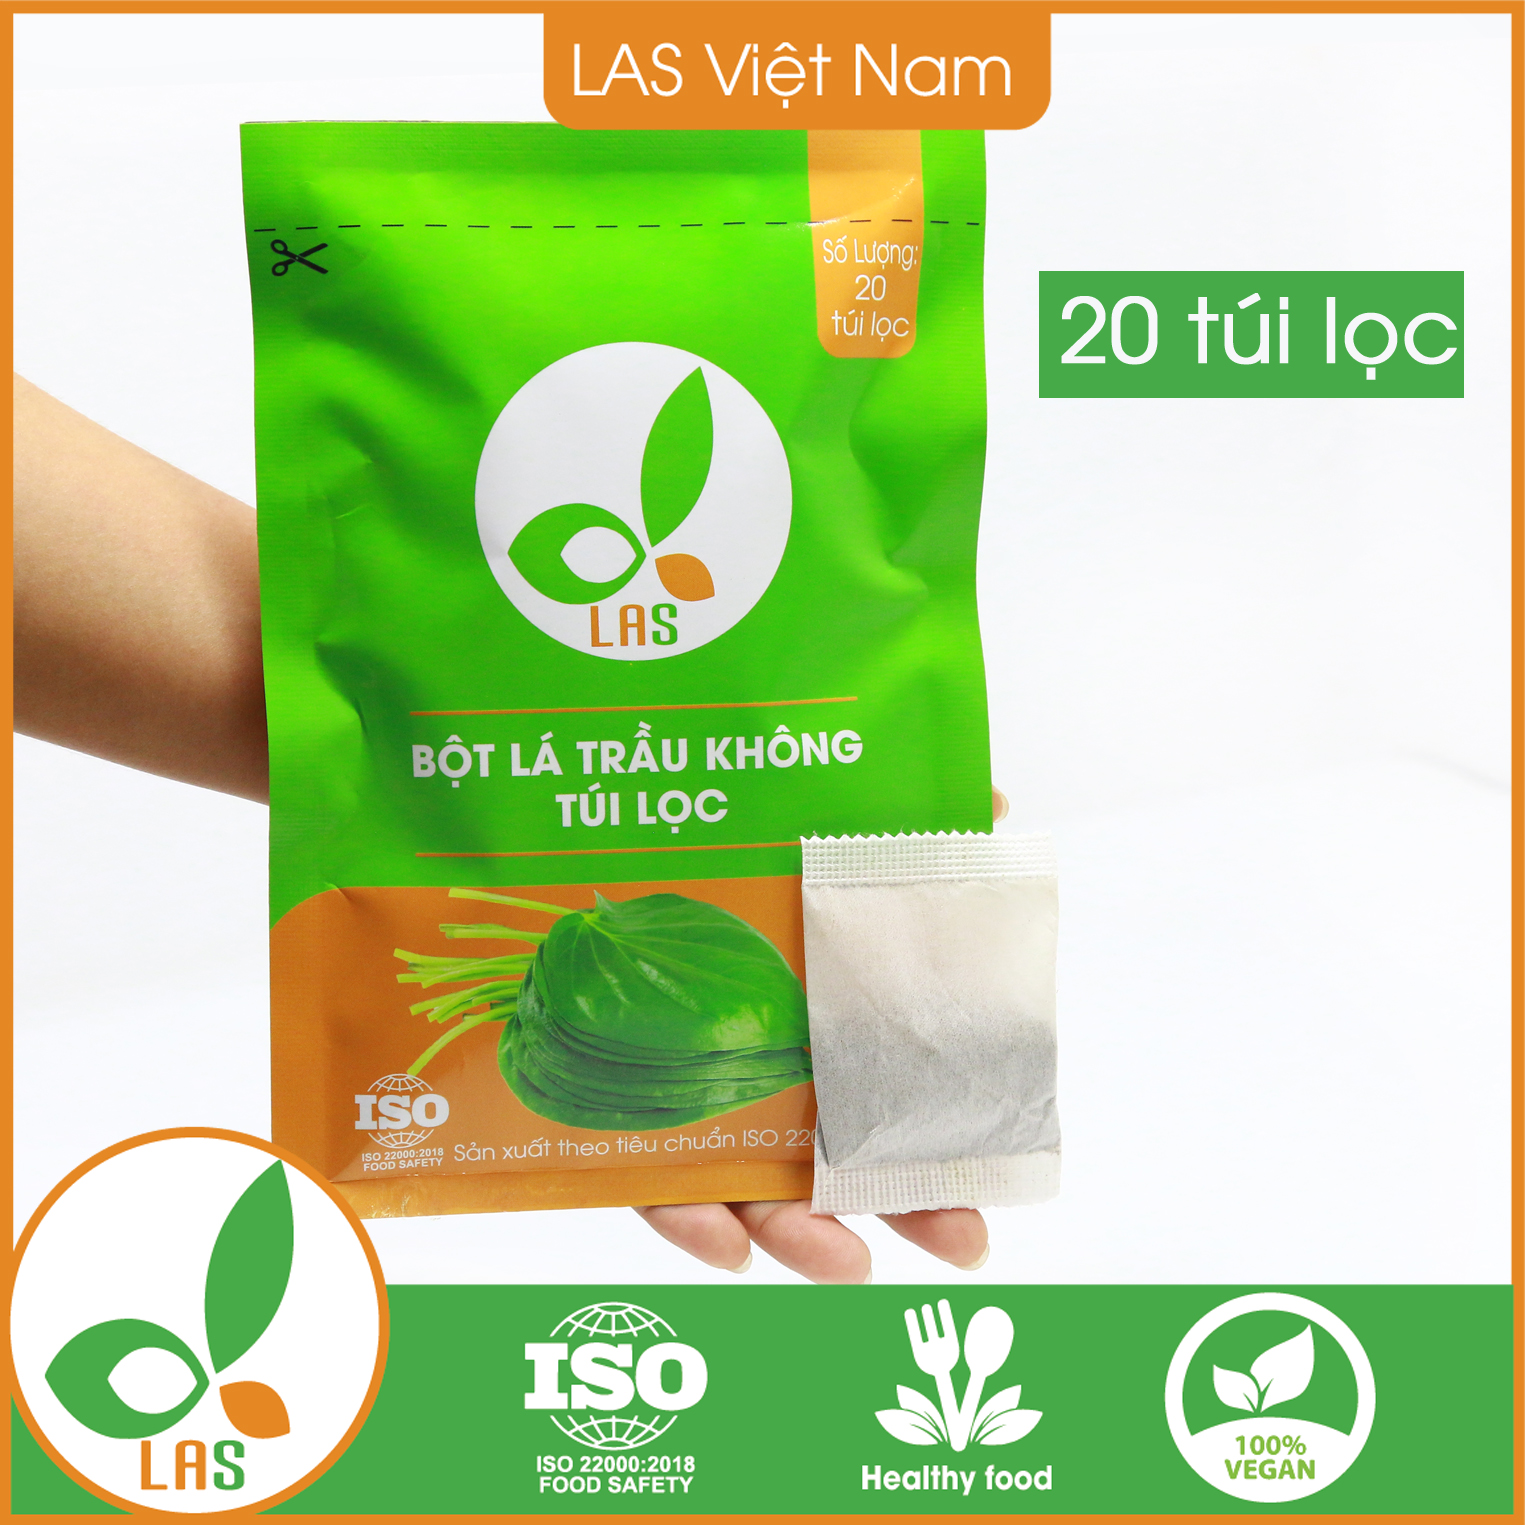 Bột lá trầu không dạng túi lọc - Gói 20 túi lọc (60gr) | LAS Việt Nam